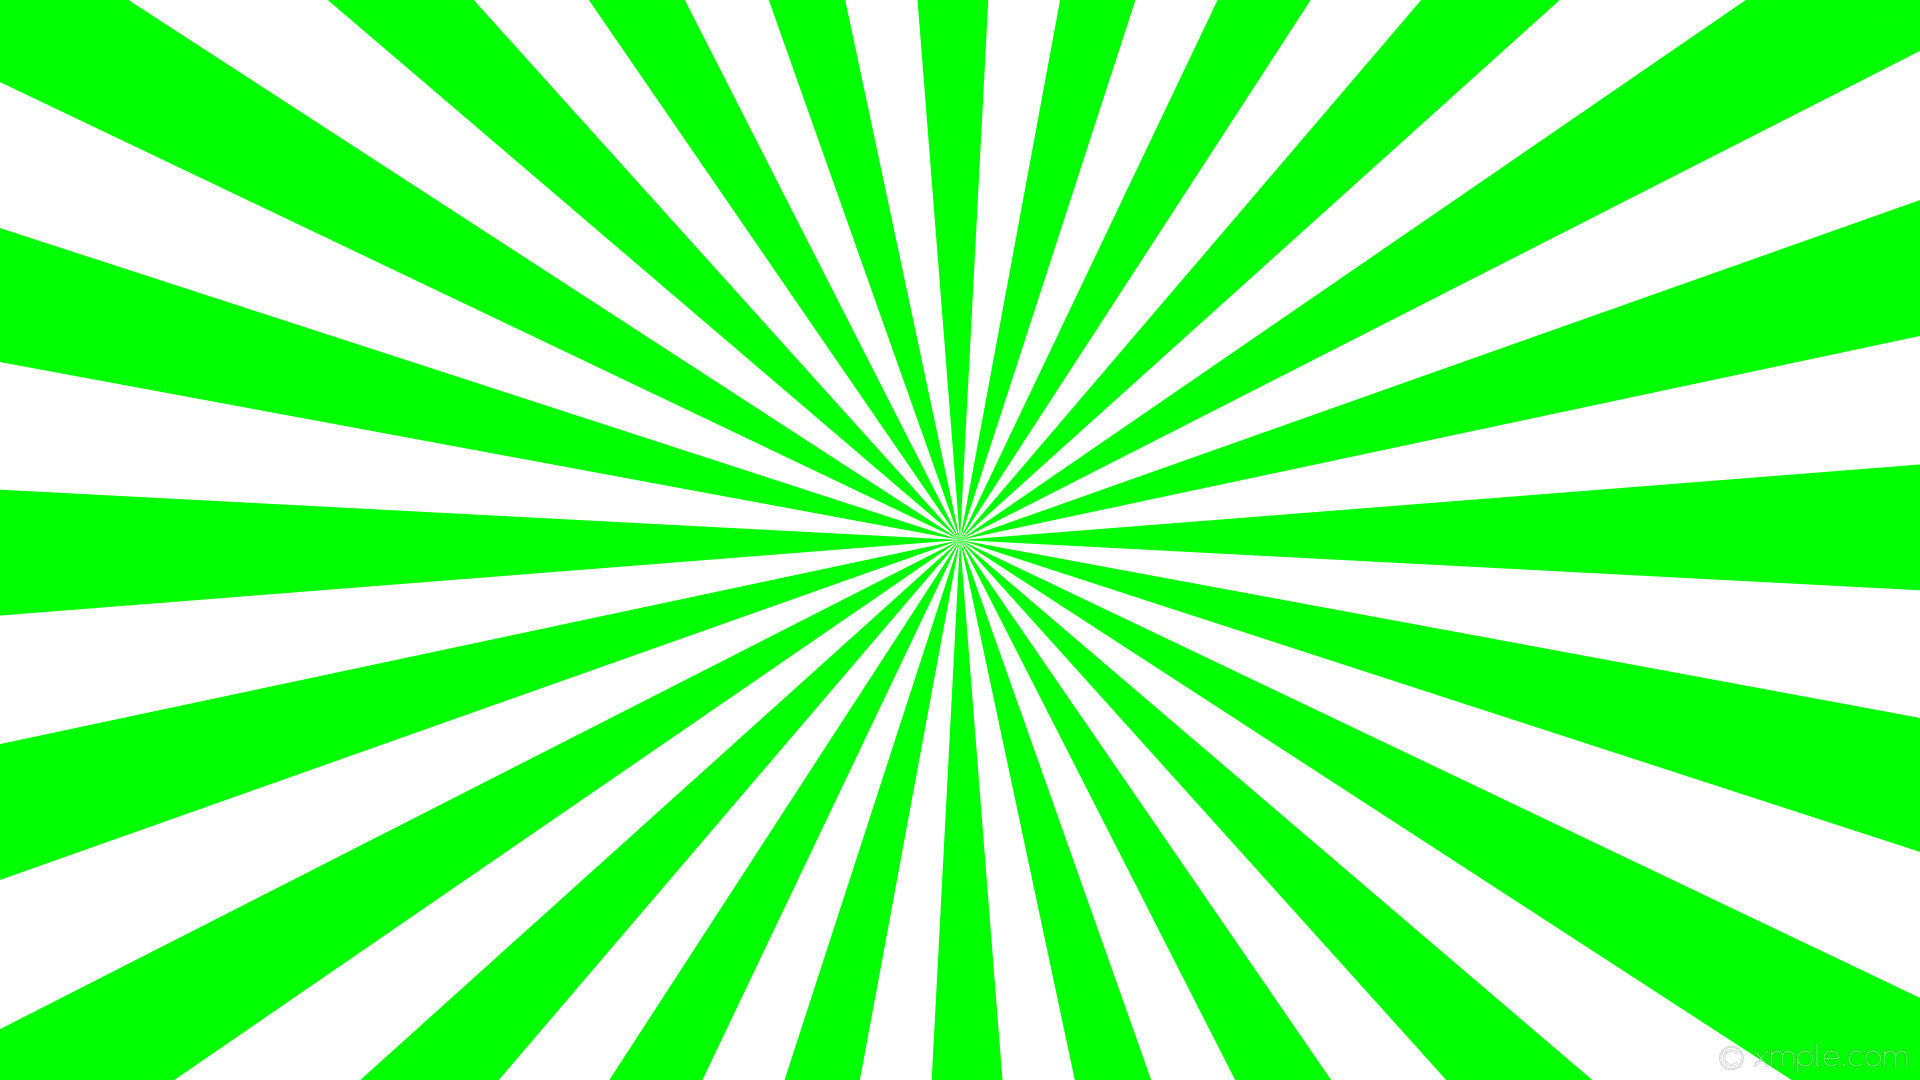 1920x1080 wallpaper rays burst green sunburst white lime #00ff00 #ffffff 3Â° 24 0 50